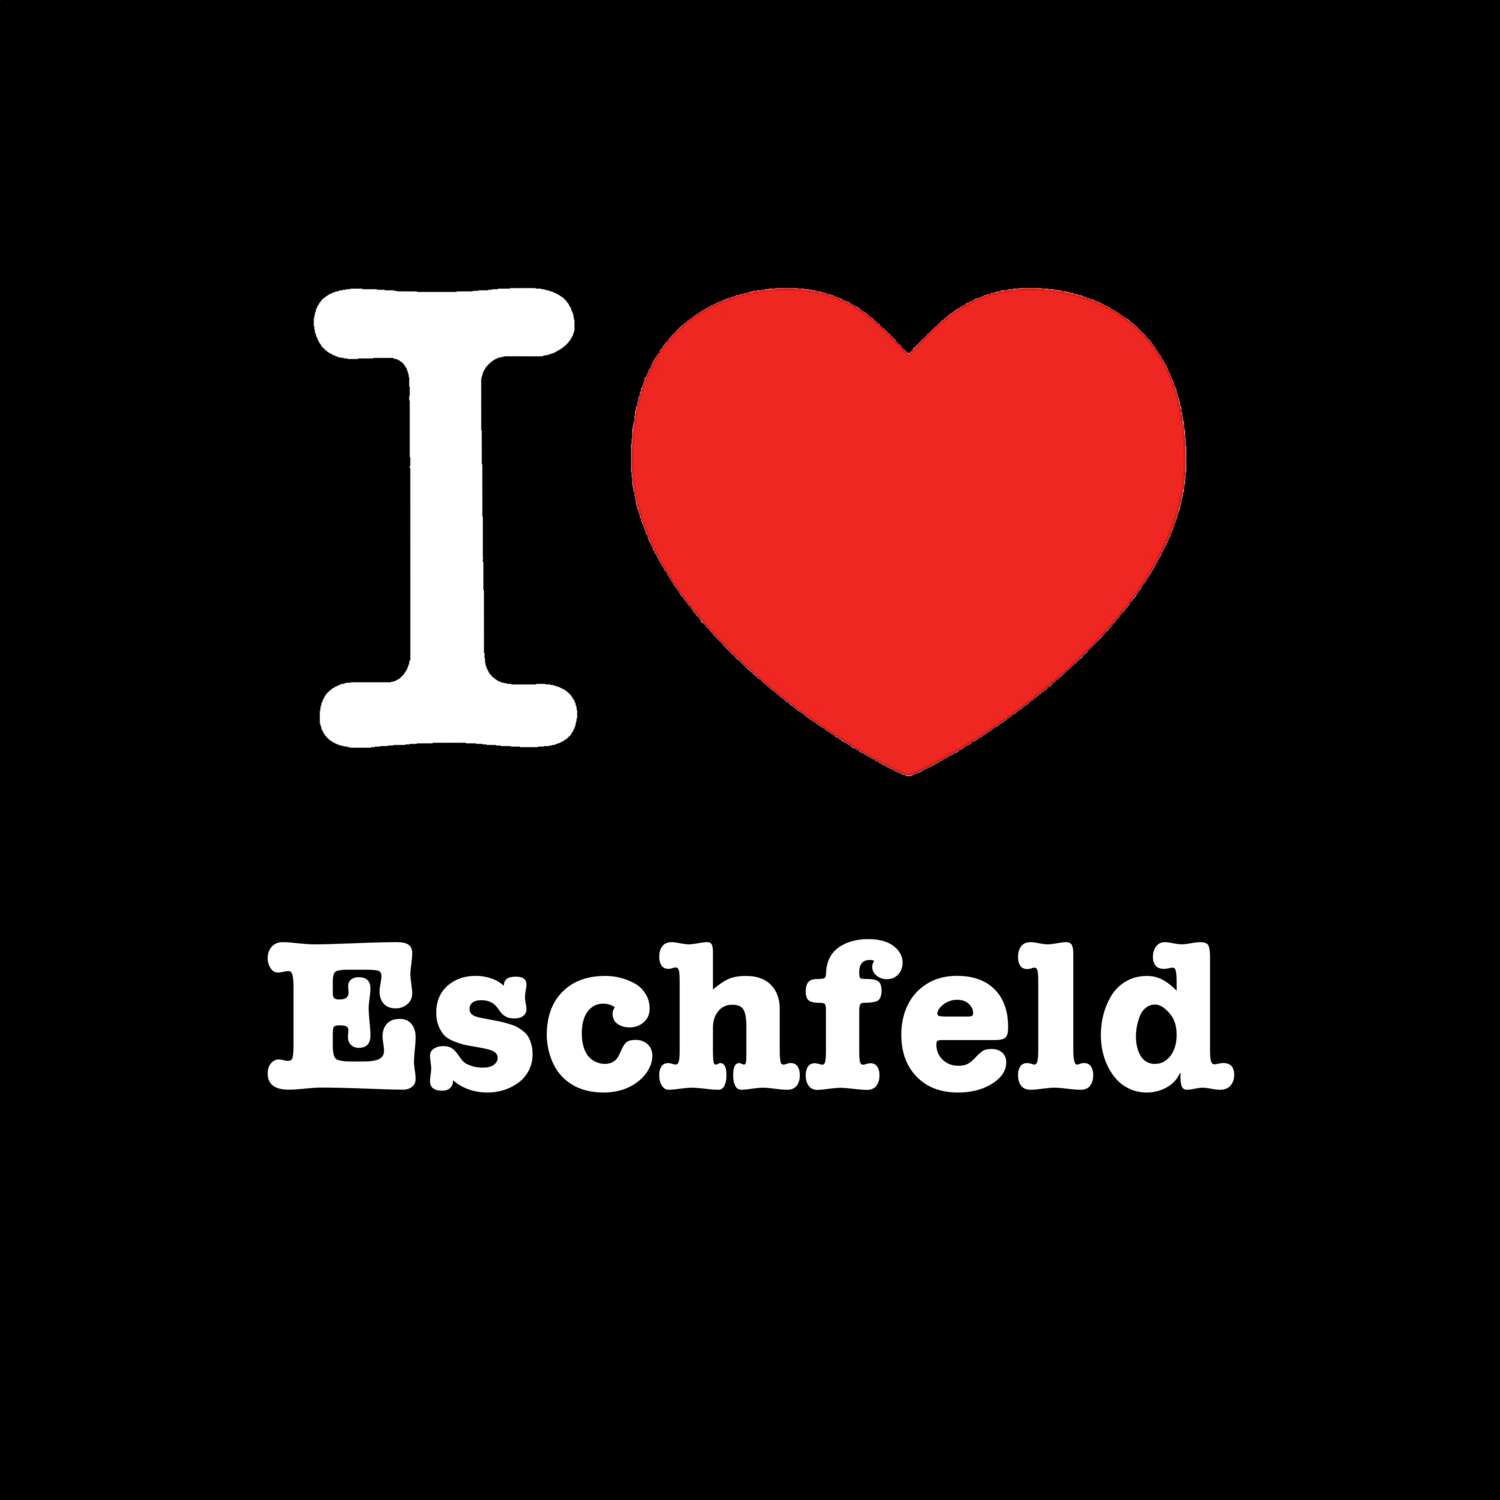 Eschfeld T-Shirt »I love«